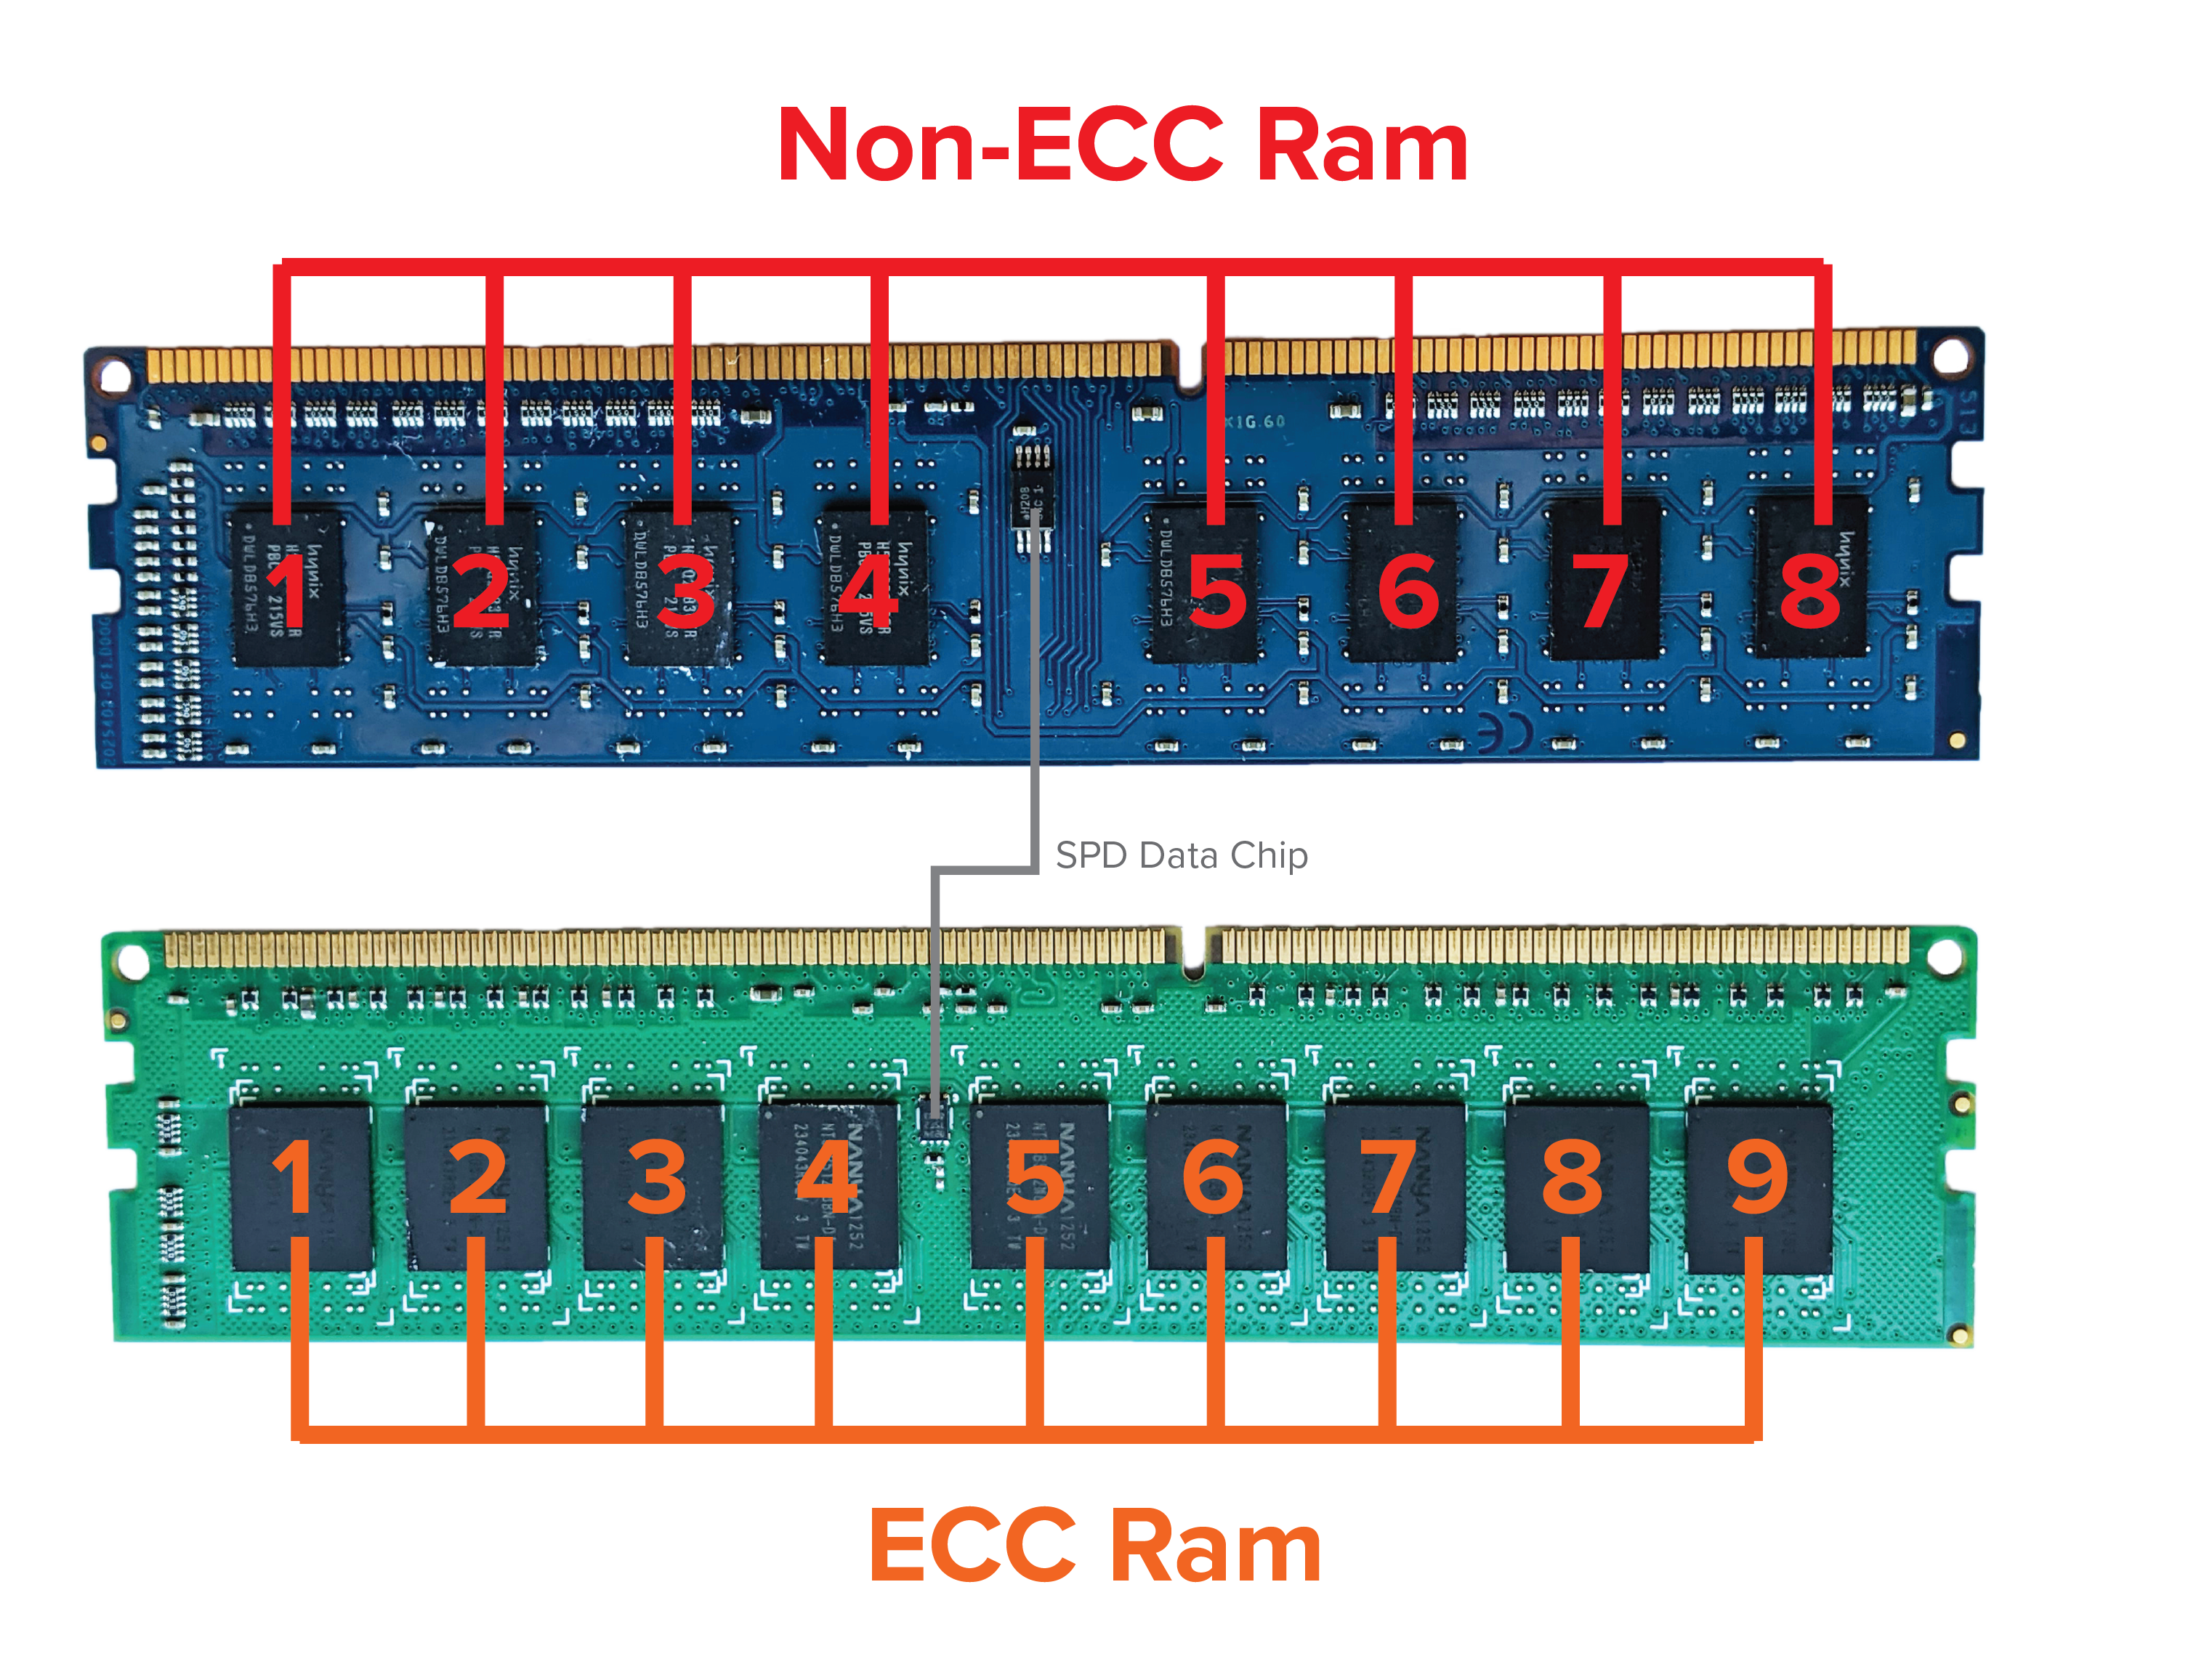 Comparison of ECC and Non-ECC Ram